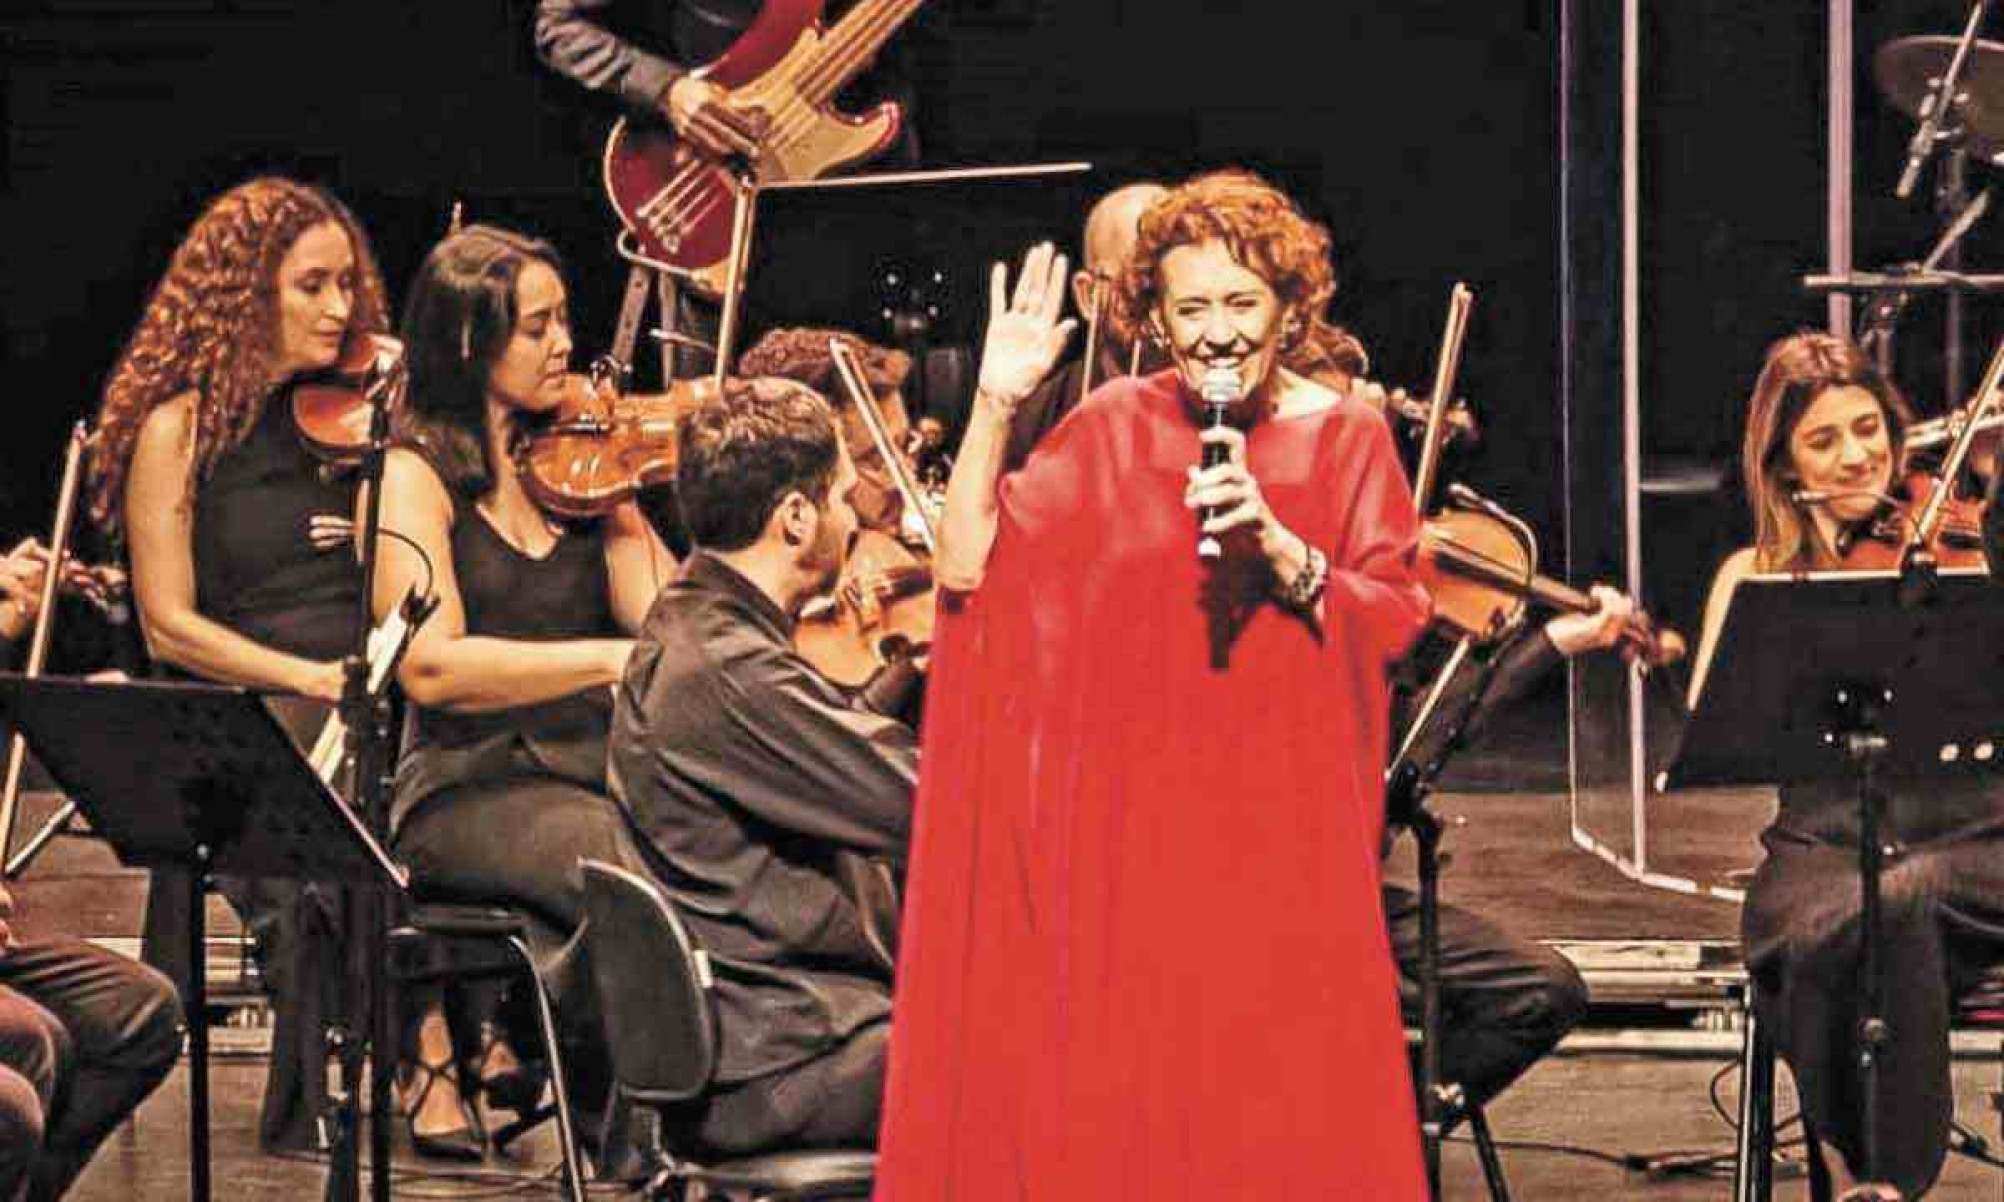 Babaya sobe ao palco no show 'De vida e canções', dedicado a Milton